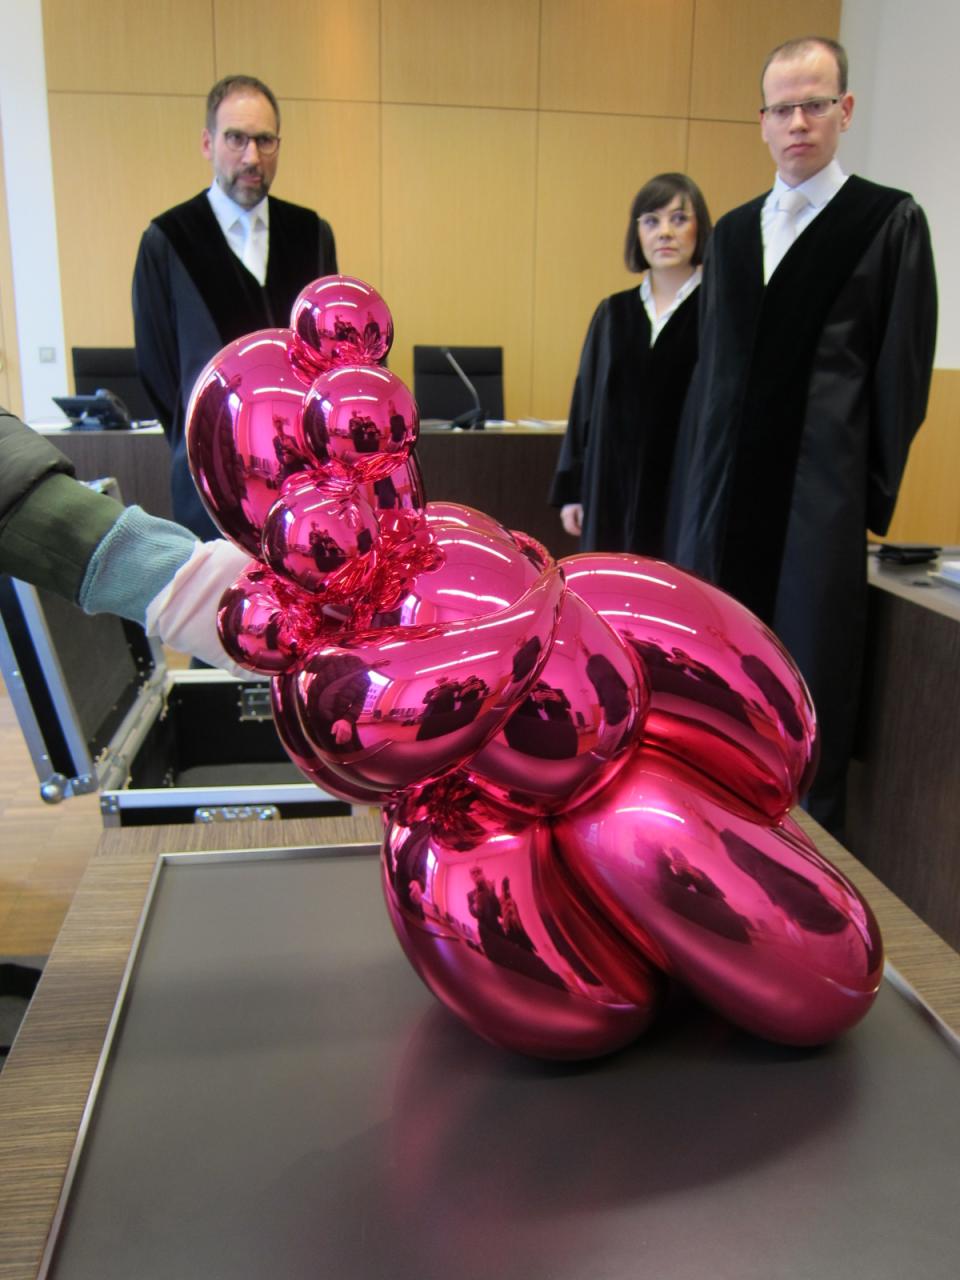 Die Koons-Skulptur "Balloon Venus" 2019 in einer Verhandlung im Landgericht Düsseldorf